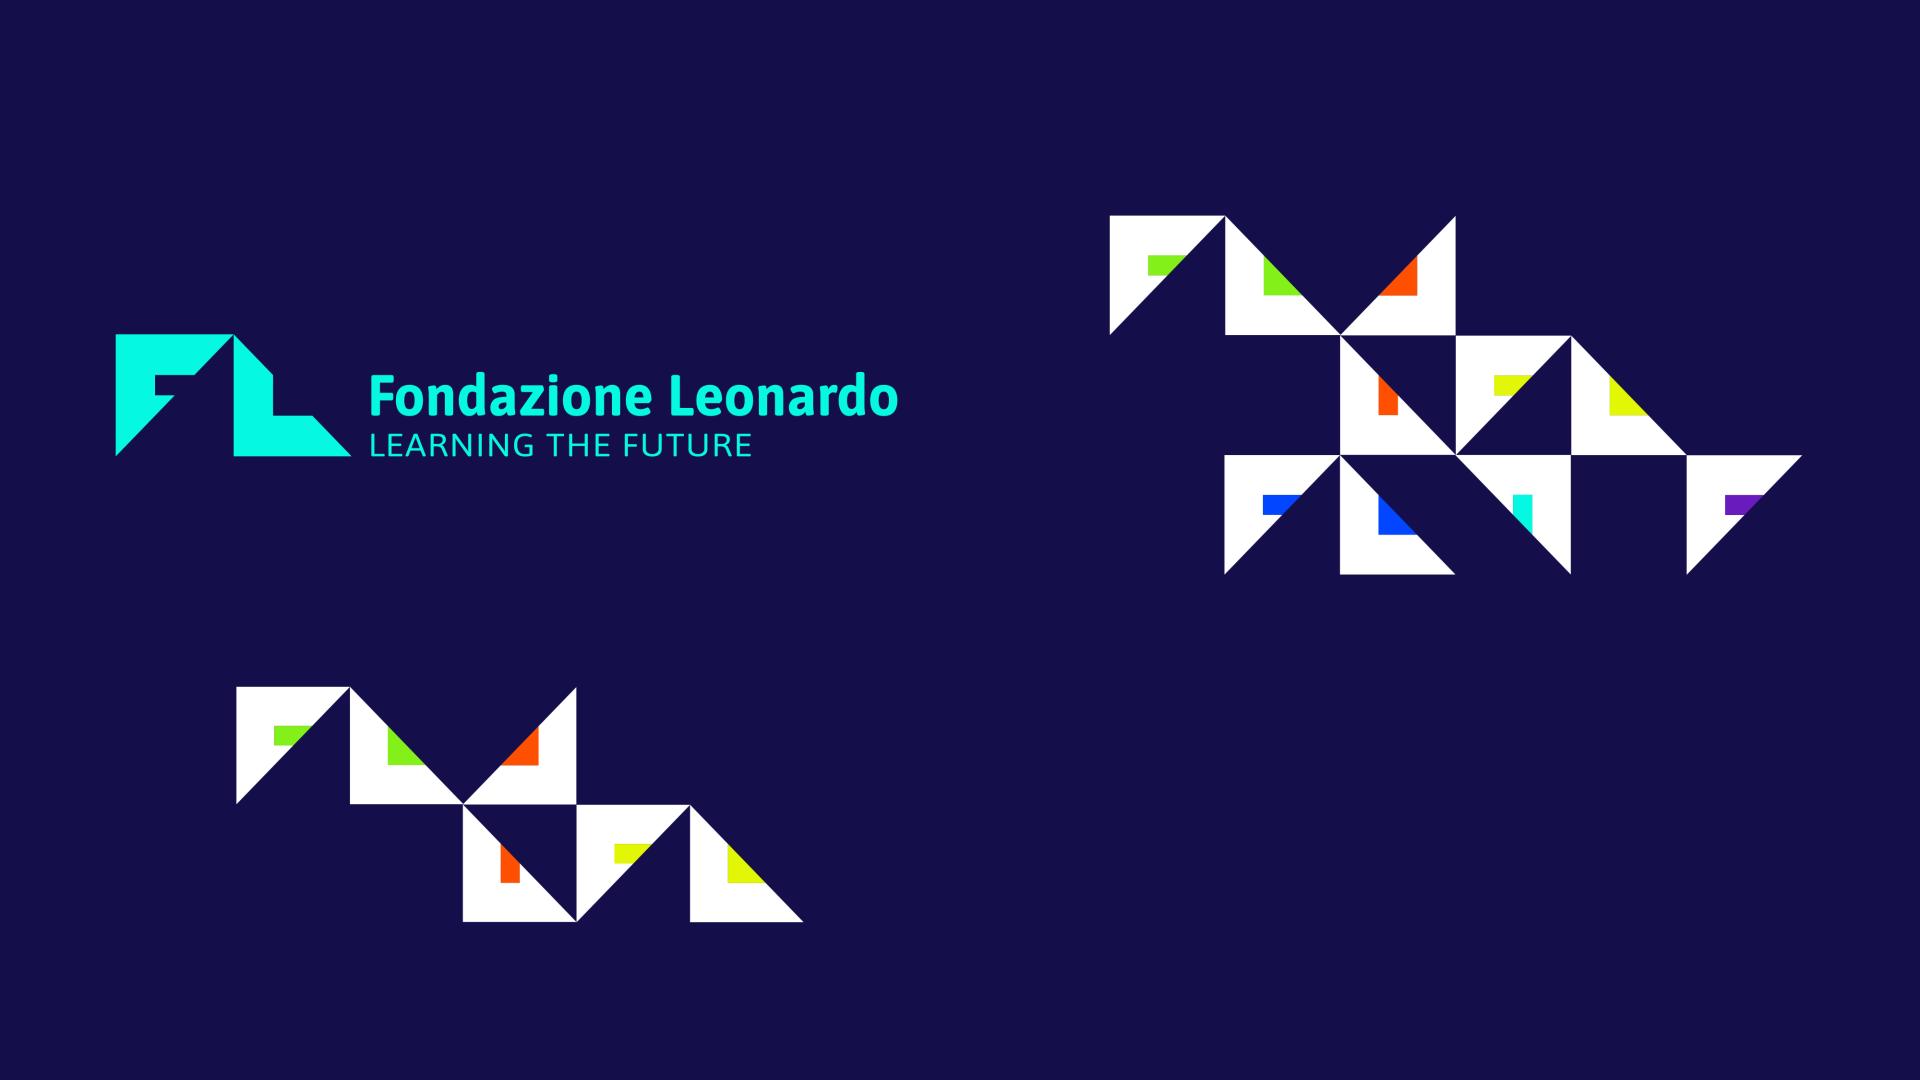 Fondazione Leonardo